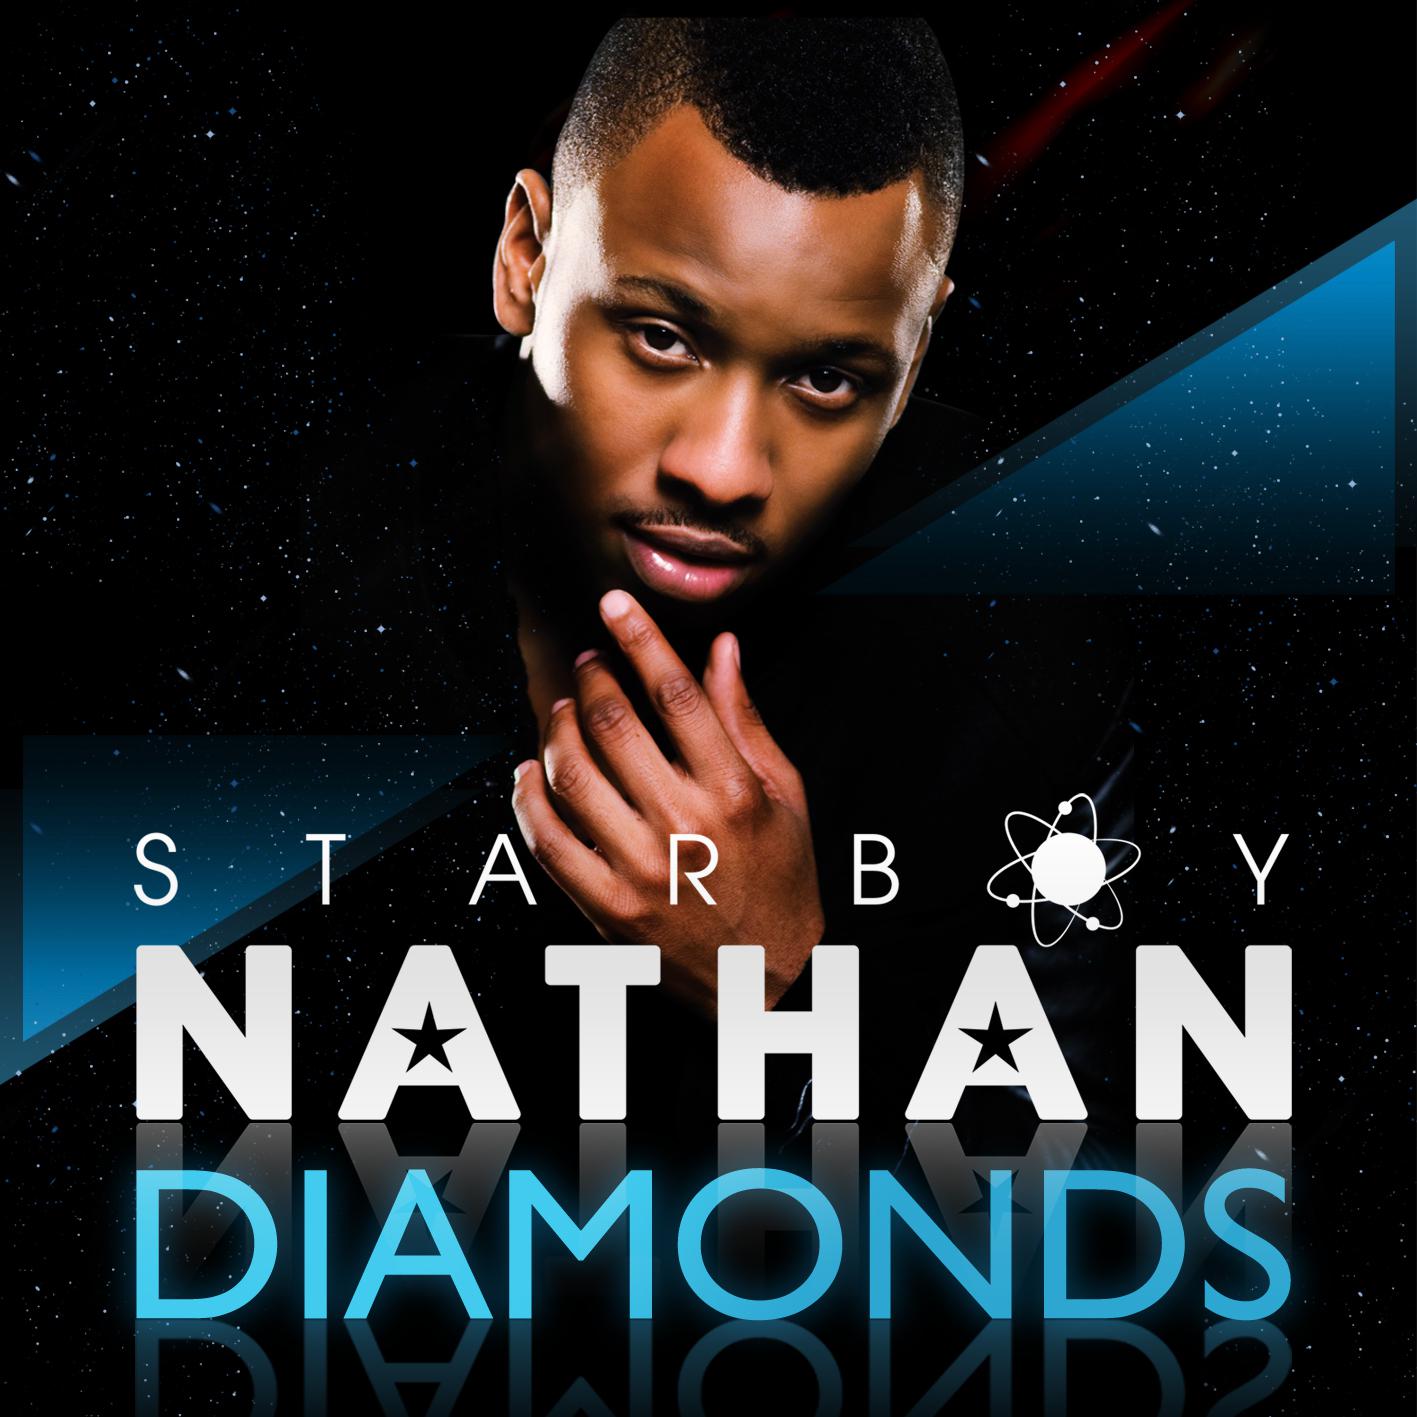 Starboy Nathan - Diamonds (Wideboys Dub)